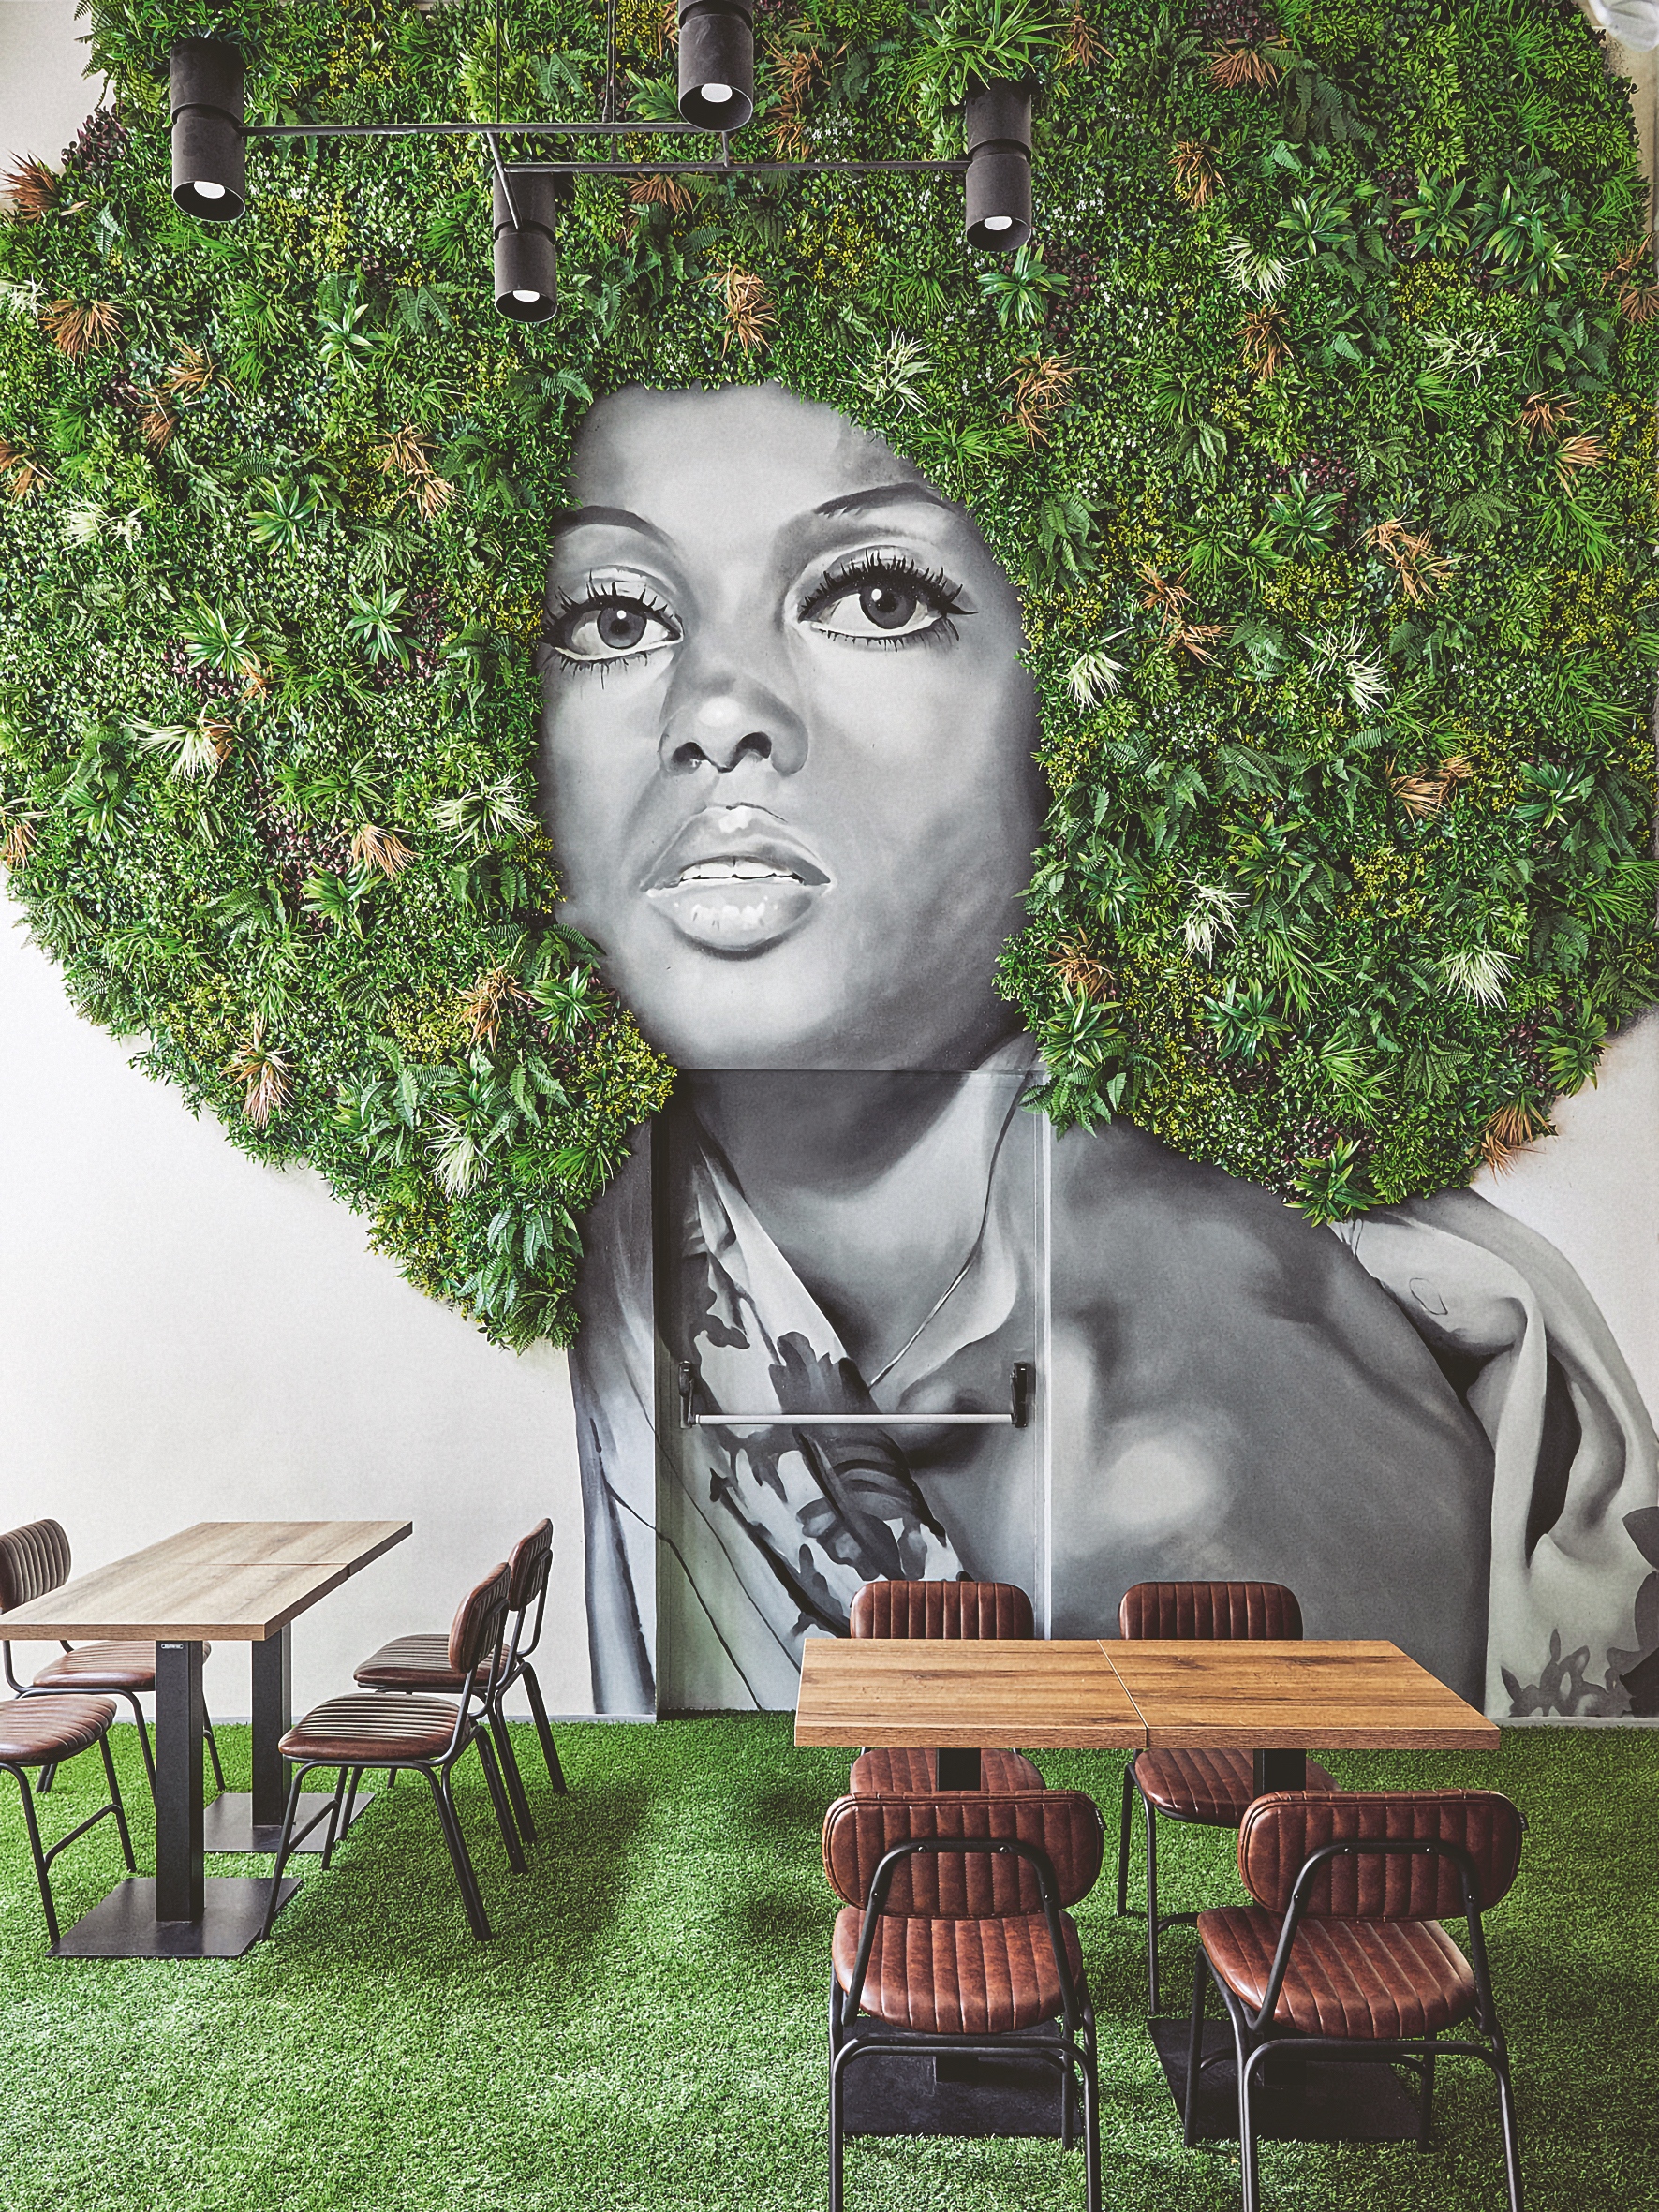 AnyTime Bar és játékterem laza, kreatív hangulatban: az összefoglaló motívumként megjelenő női fej növényhajjal pezsdíti fel a hangulatot. Fotó: Barbay Csaba